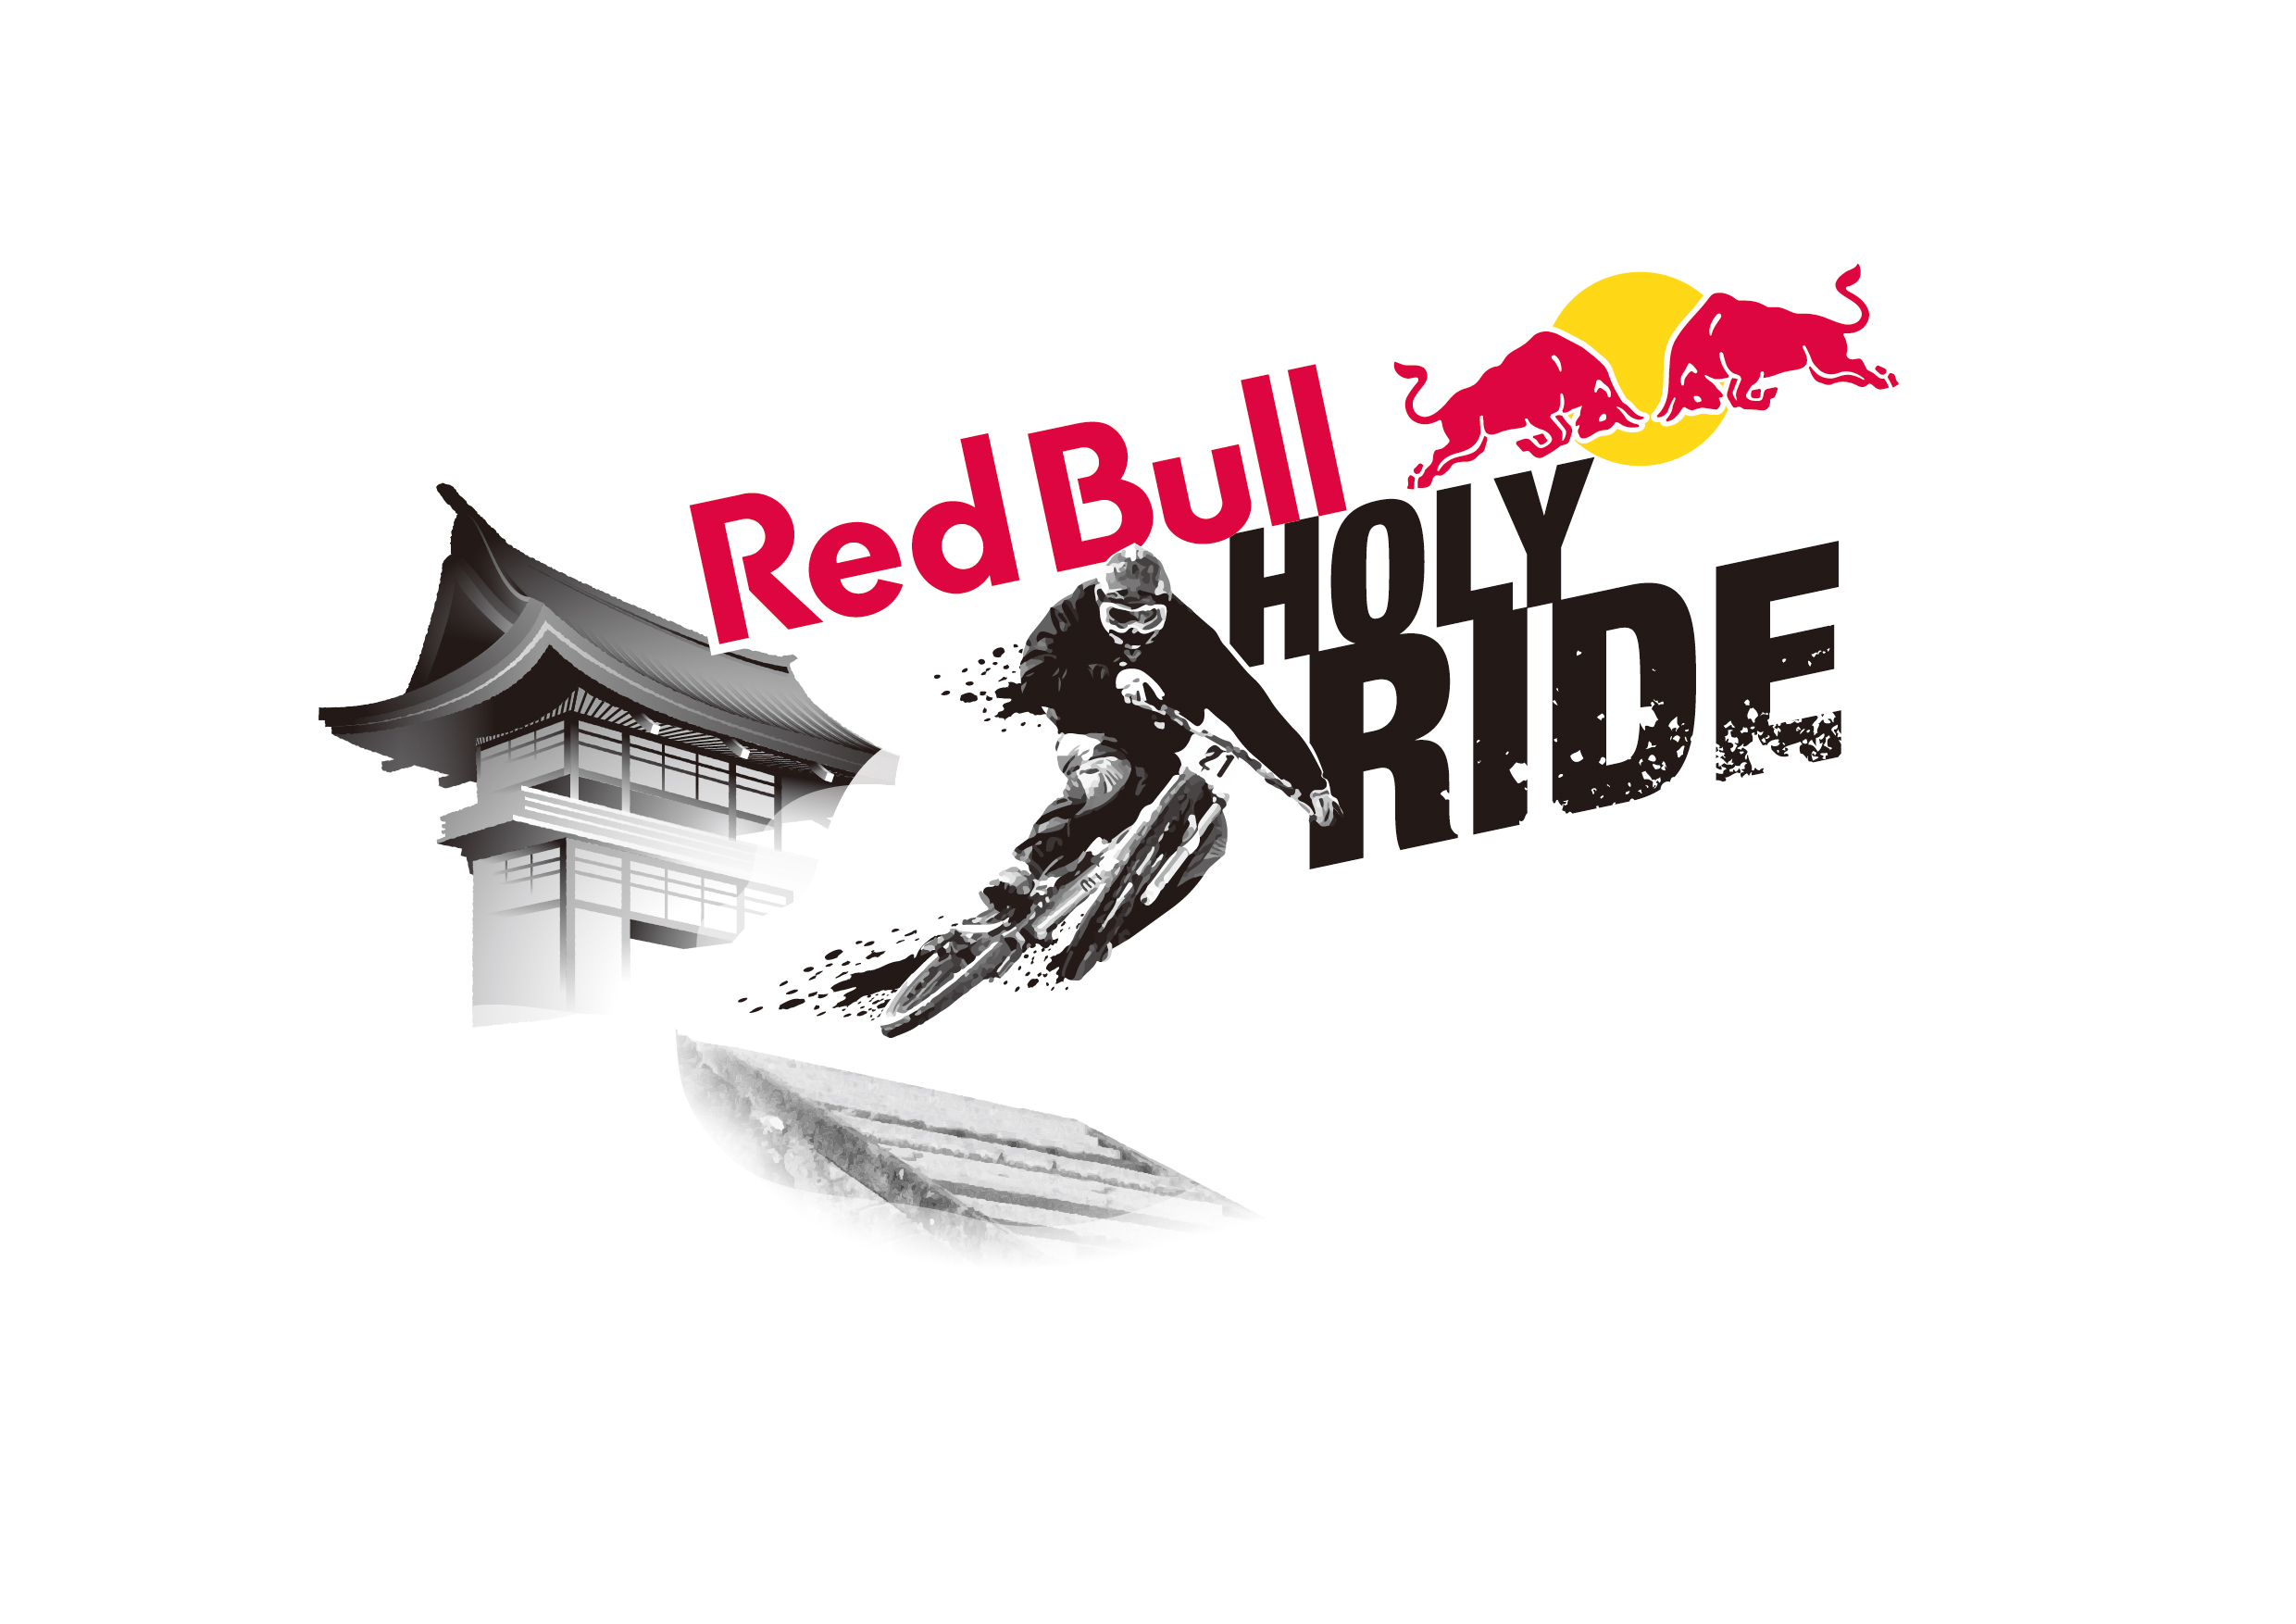 エナジードリンク ブランドのレッドブルと連携 スポーツブルにて8月27日 日 開催のマウンテンバイクダウンヒル大会 Red Bull Holy Ride 17 の無料ライブ配信決定 株式会社運動通信社のプレスリリース